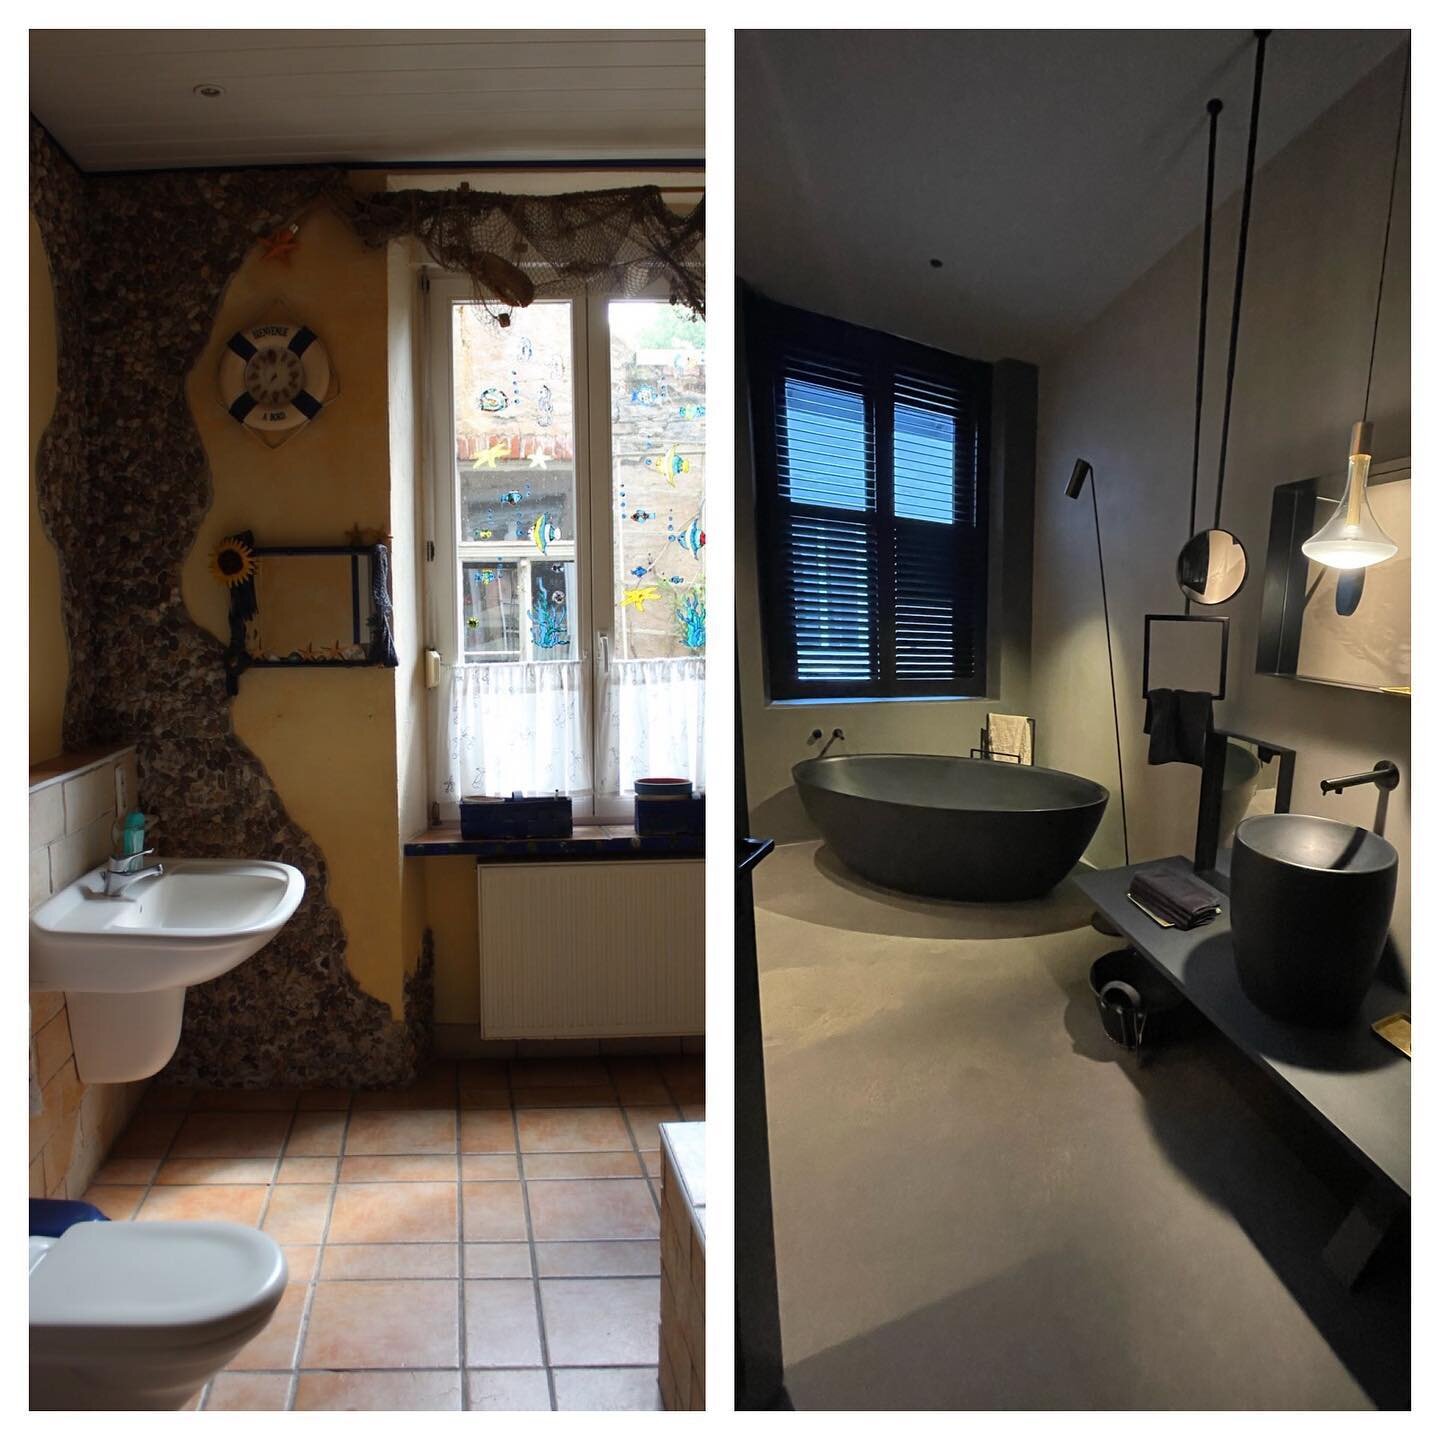 LA MAISON &amp; Vorher- Nachher-
Kaum wiederzuerkennen! Unser Bad im La Maison Erdgeschoss. Ein zeitloser, eleganter R&uuml;ckzugsort mit neuer Lebendigkeit. 

#lamaison #umbau #interiordesign #vorhernachher